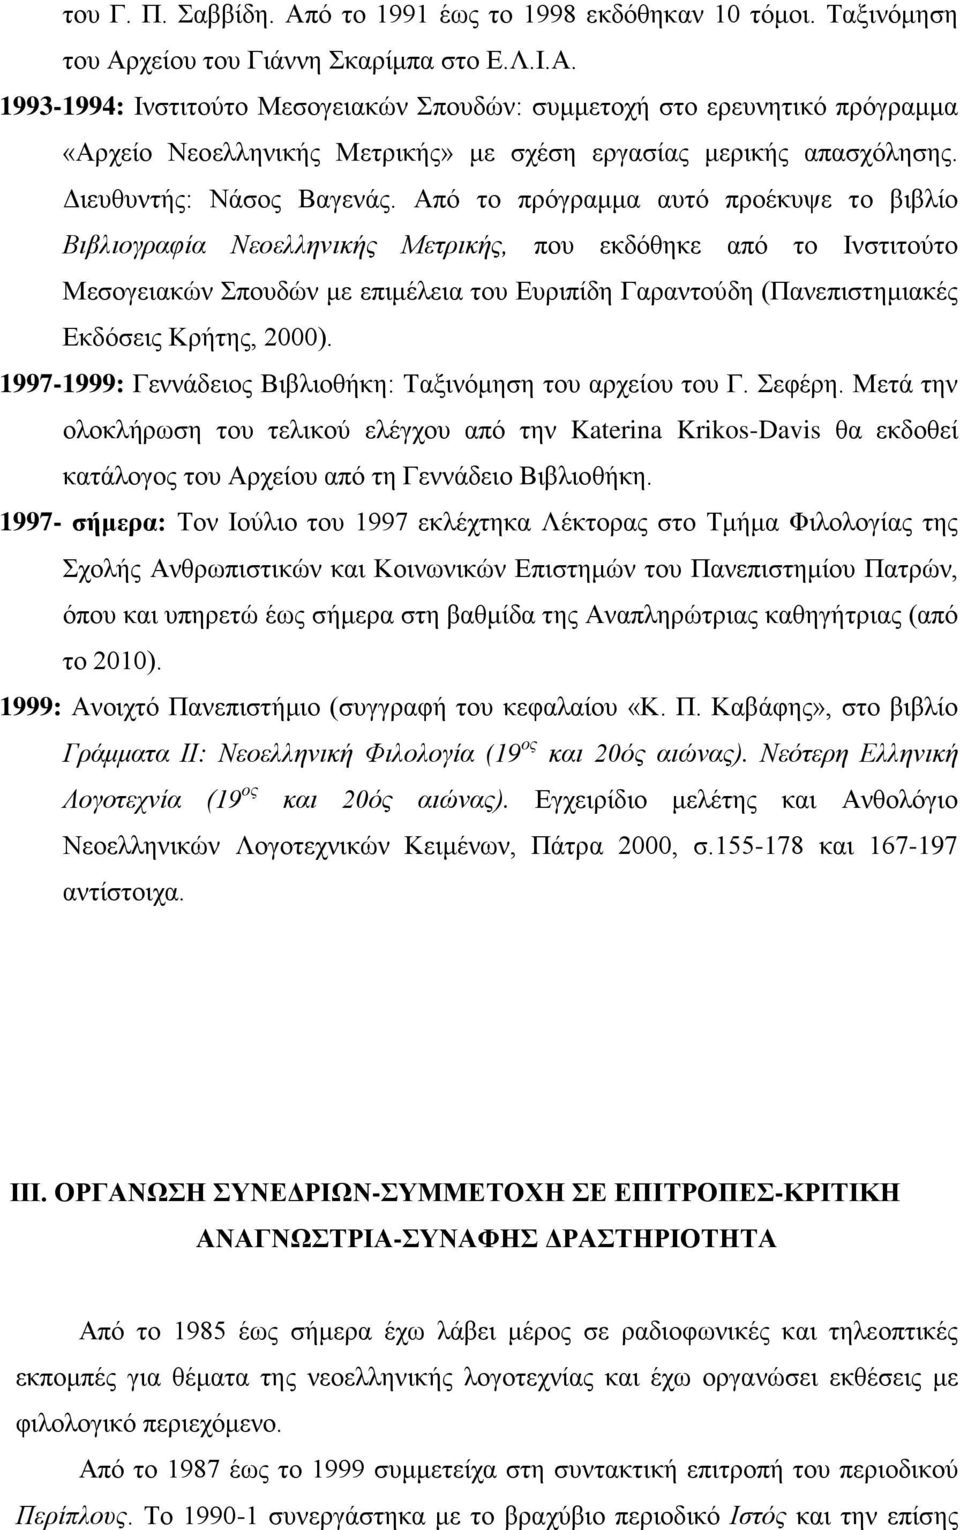 Από το πρόγραμμα αυτό προέκυψε το βιβλίο Βιβλιογραφία Νεοελληνικής Μετρικής, που εκδόθηκε από το Ινστιτούτο Μεσογειακών Σπουδών με επιμέλεια του Ευριπίδη Γαραντούδη (Πανεπιστημιακές Εκδόσεις Κρήτης,